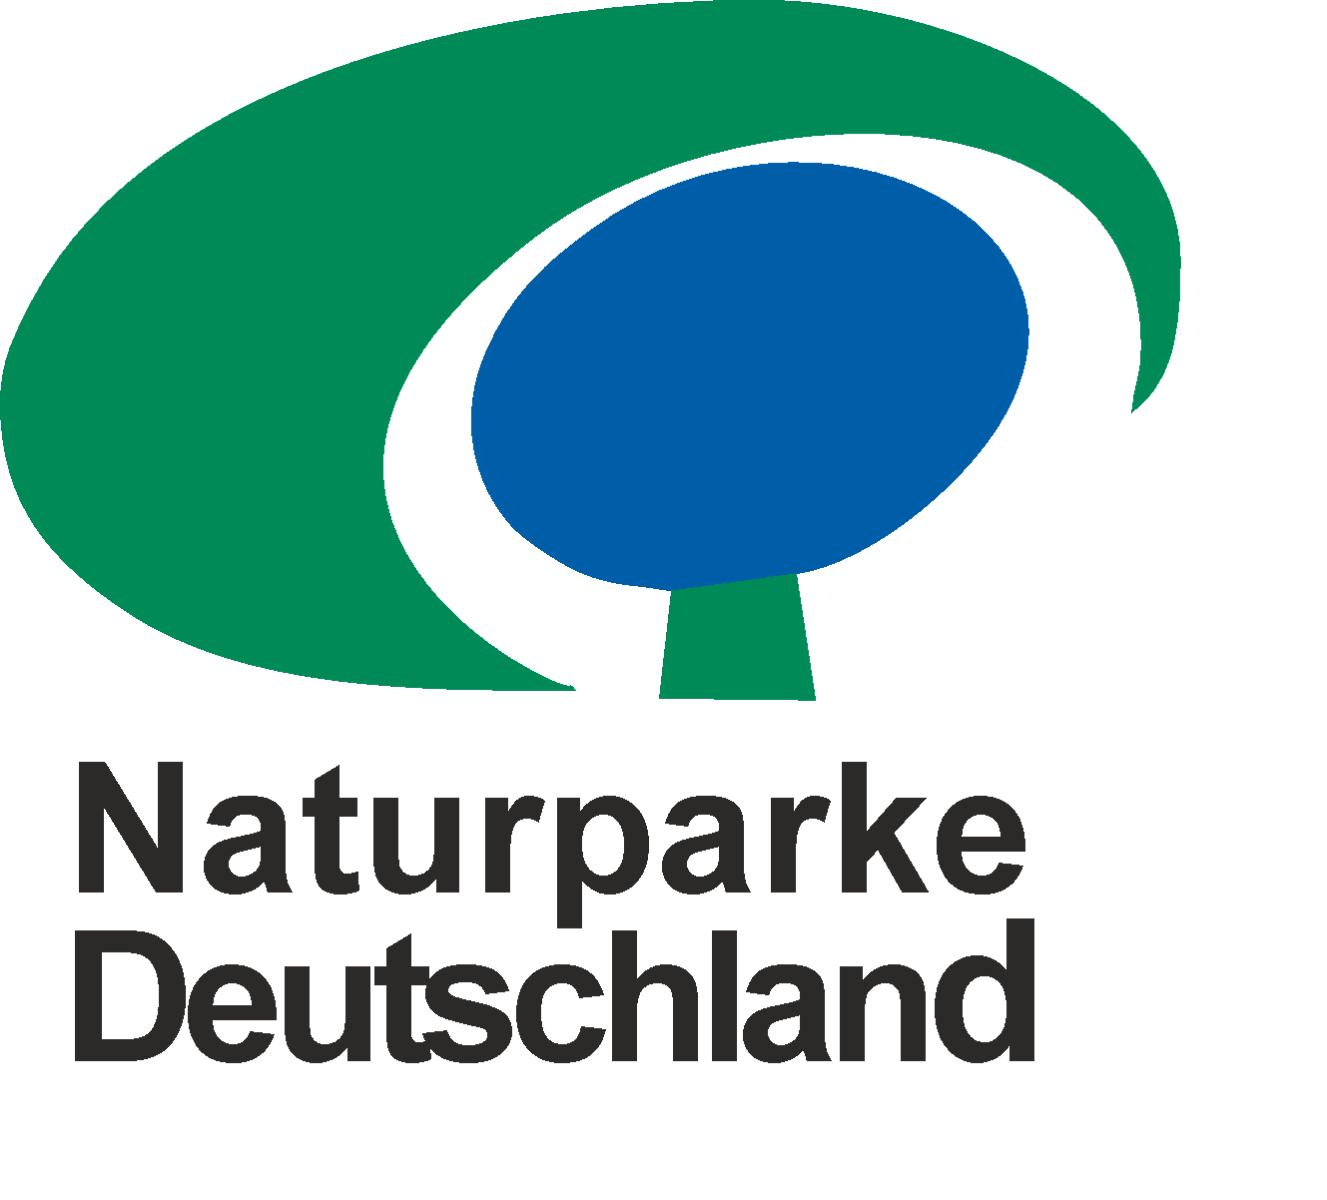  Bislang der einzige grenzüberschreitende Naturpark zwischen Deutschland und Österreich.